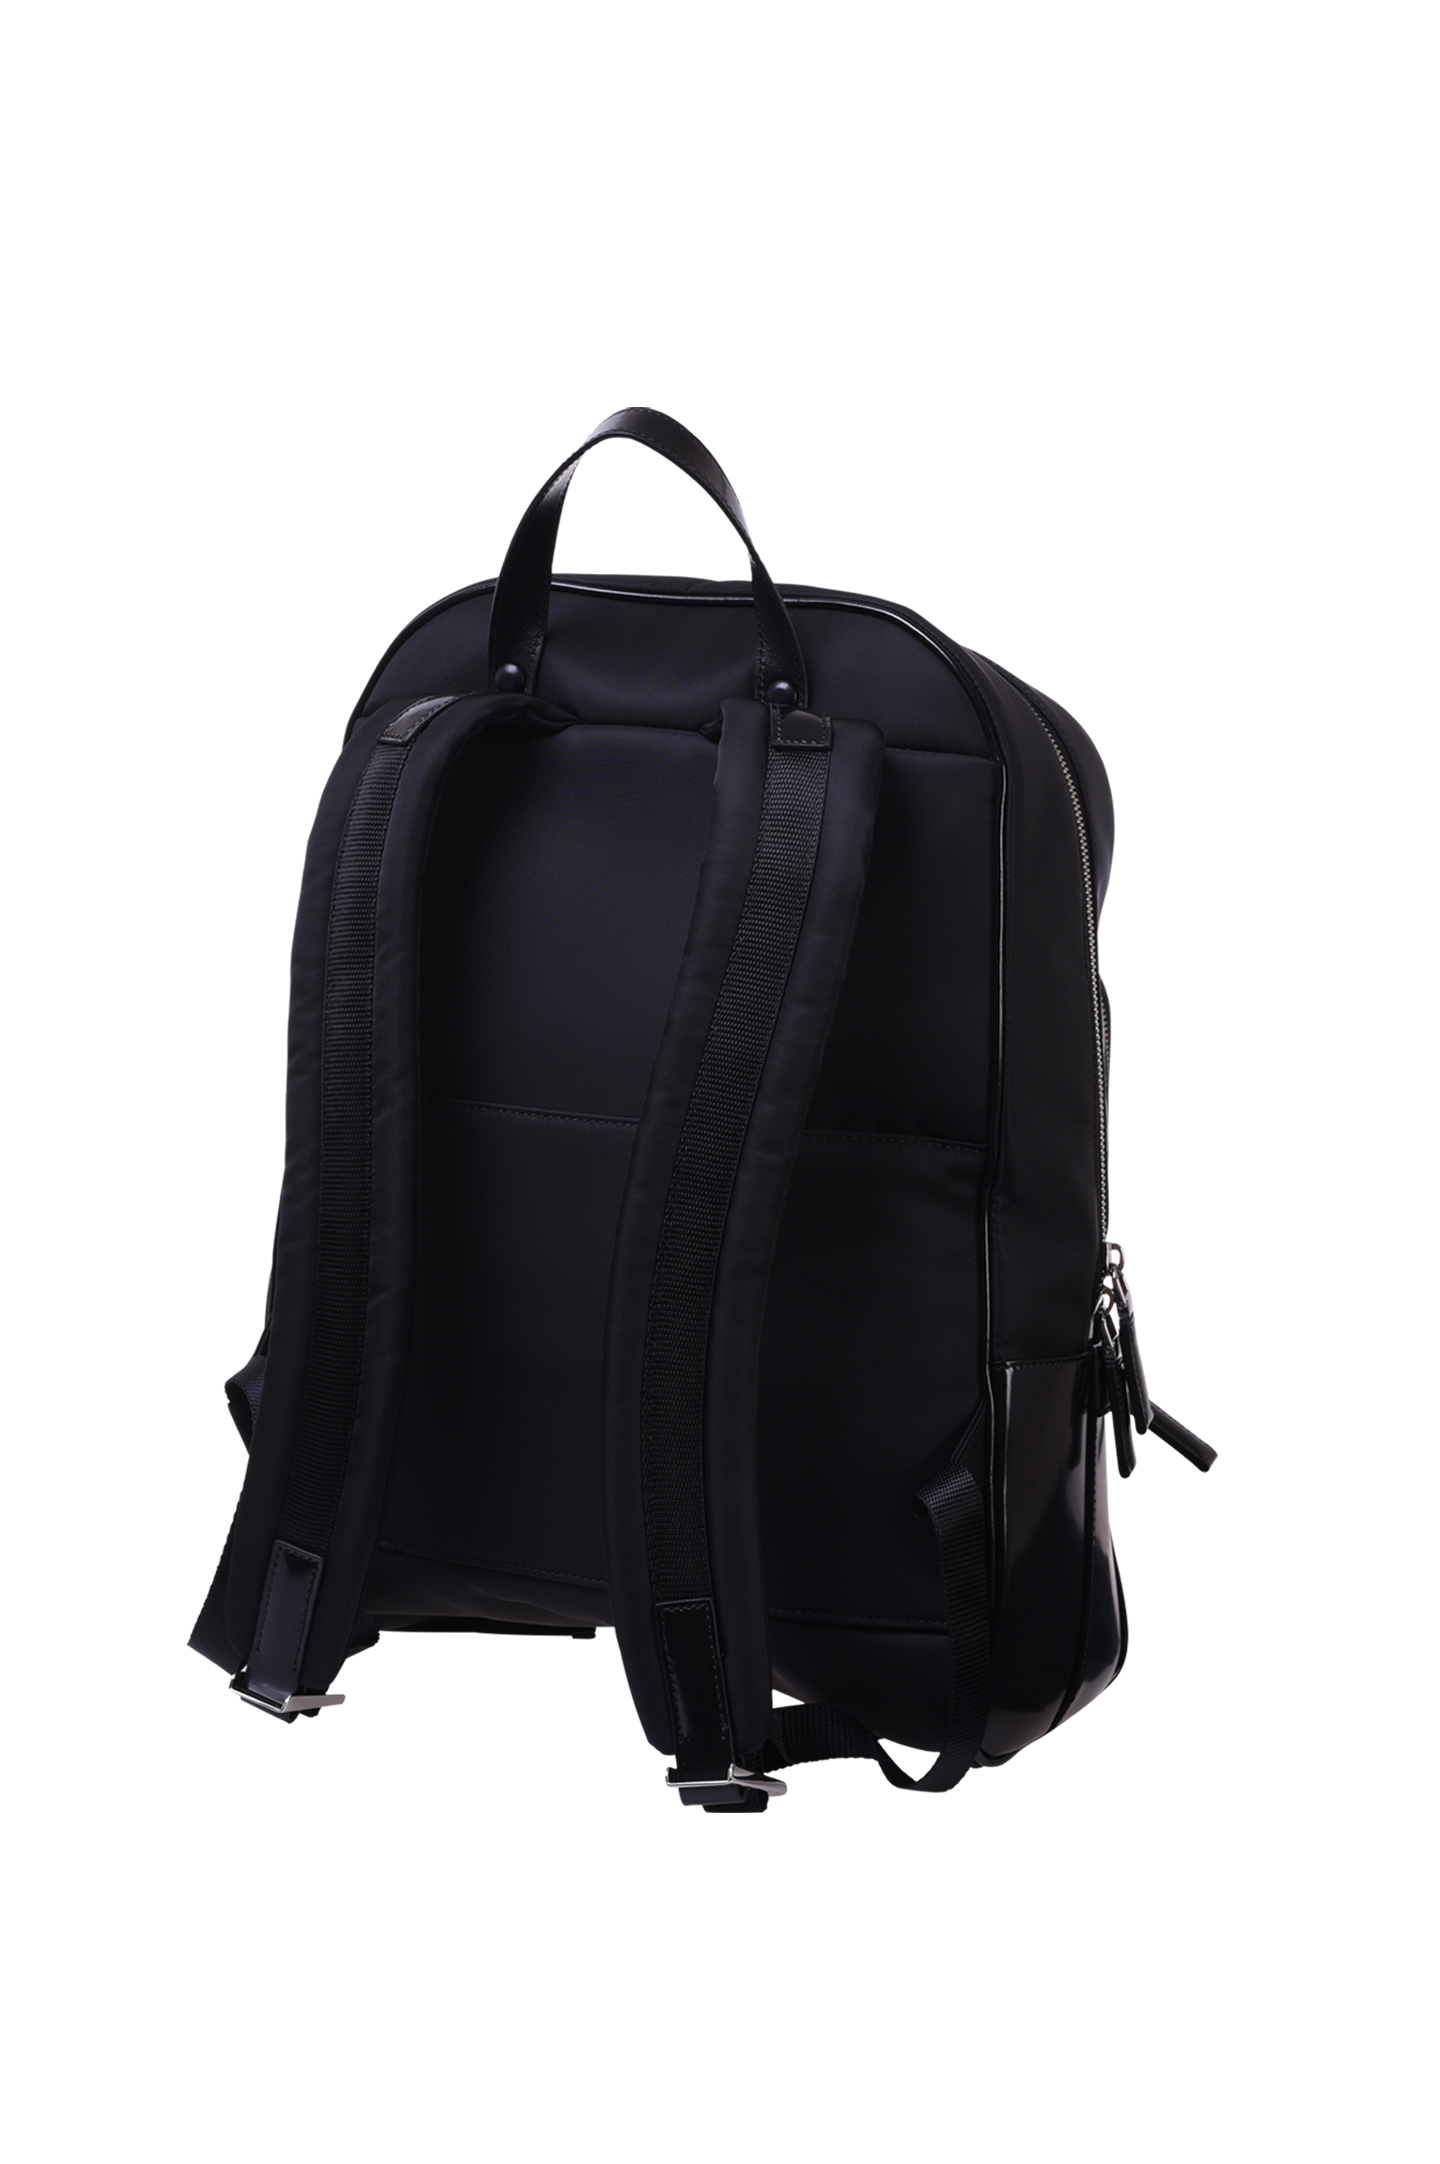 Рюкзак PRADA 2VZ084 789, цвет: Черный, Мужской